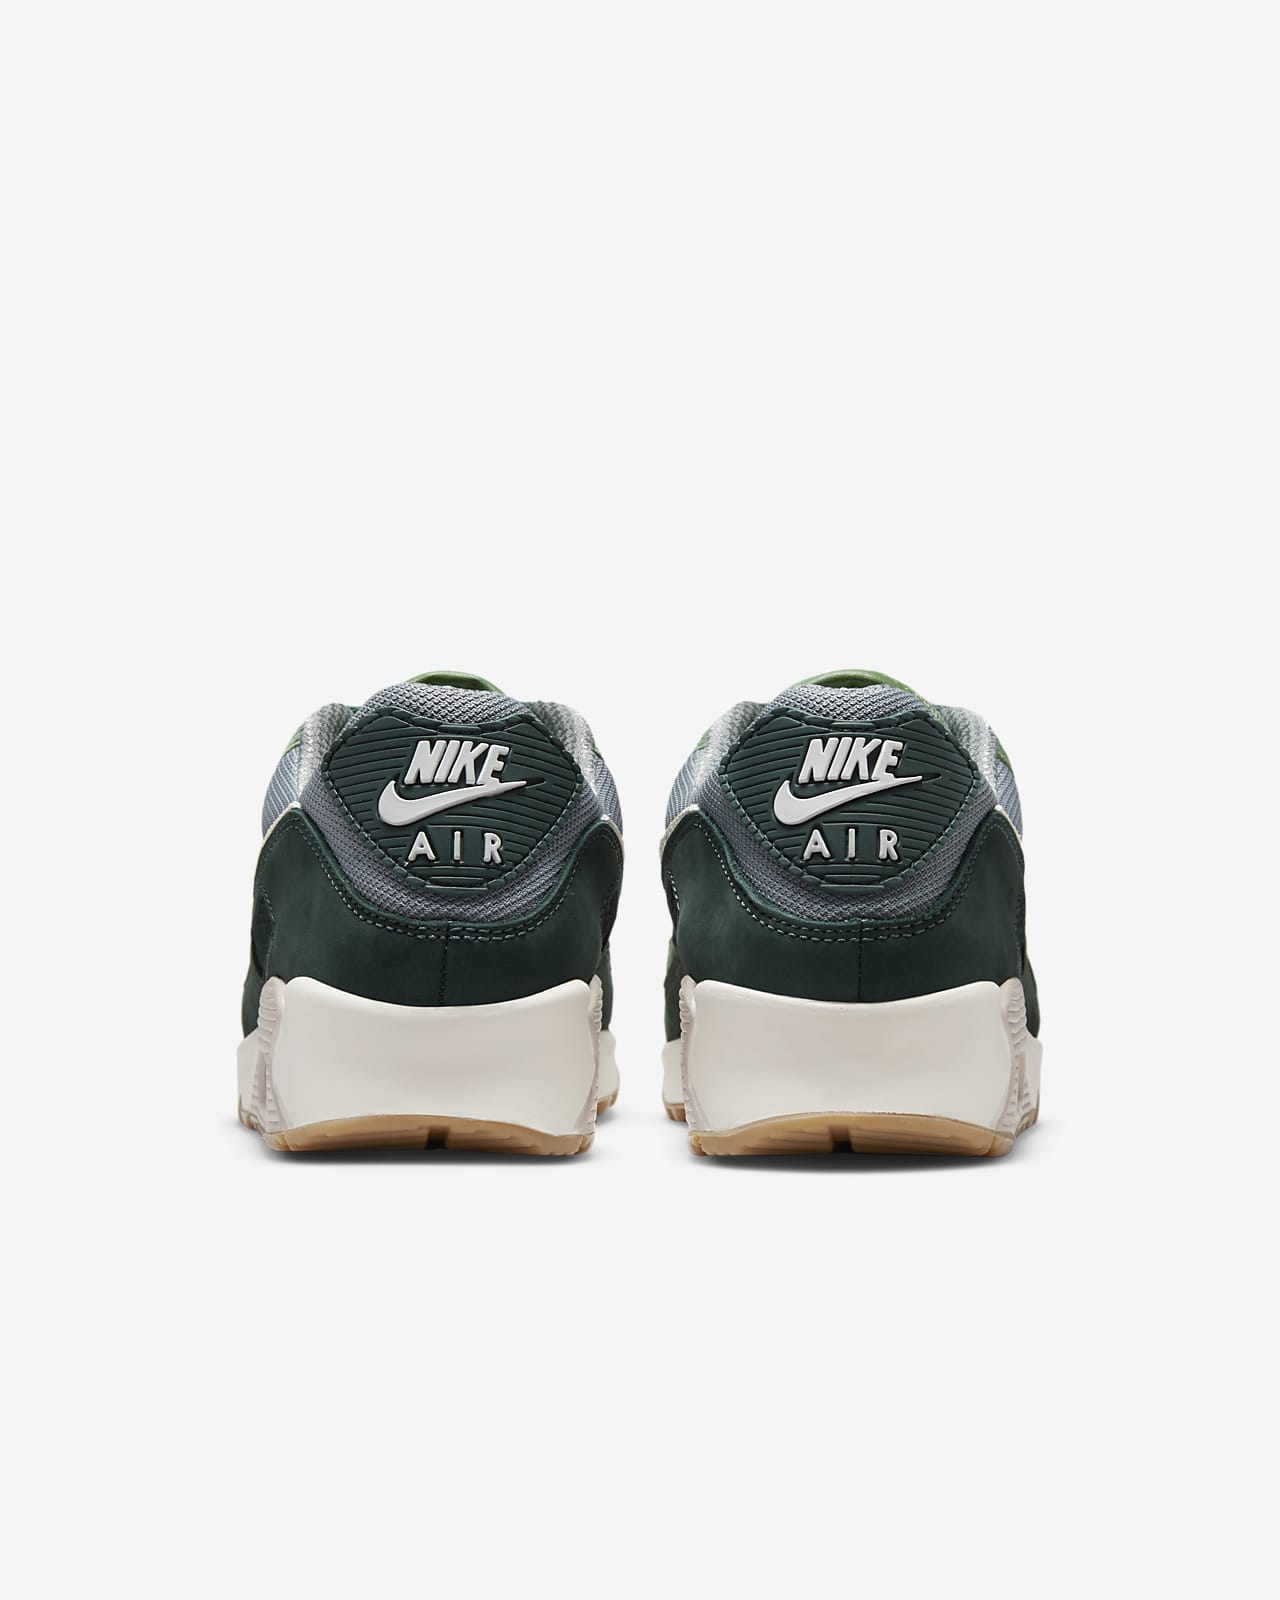 Nike Air Max 90 Pro Green